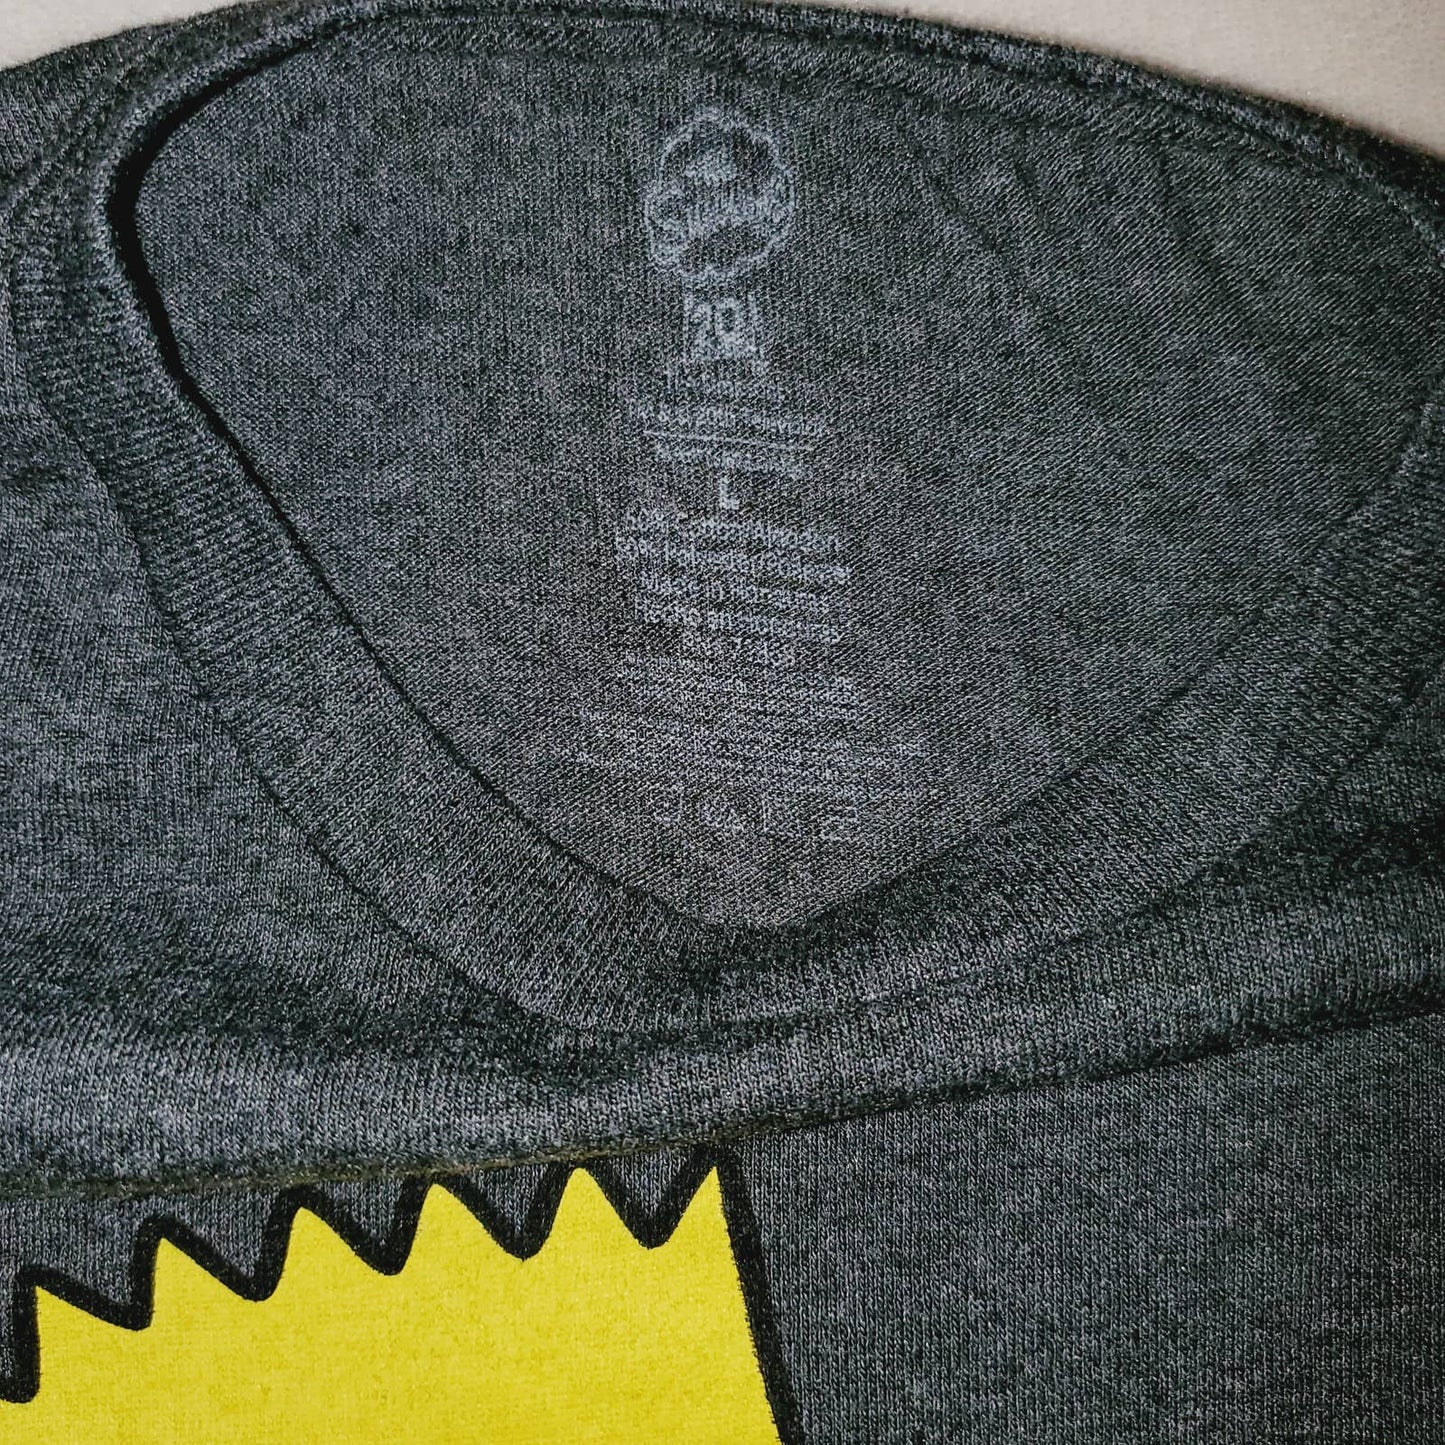 Bart Simpson w/ Slingshot Unisex Large Short Sleeve Graphic Tshirt - NWOT